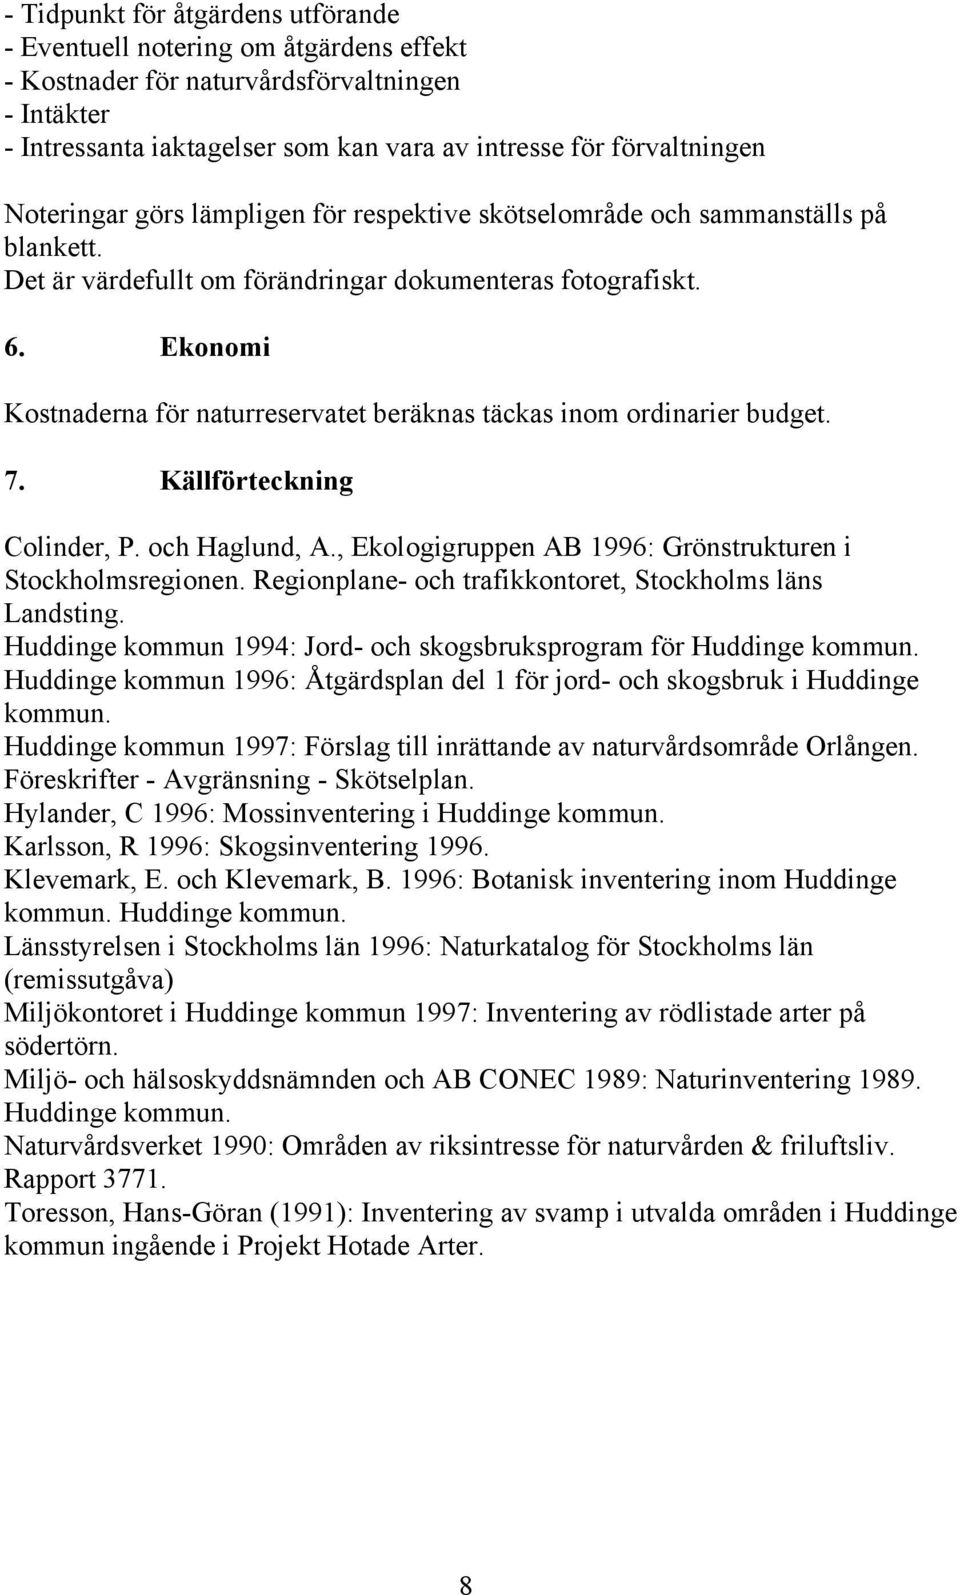 Ekonomi Kostnaderna för naturreservatet beräknas täckas inom ordinarier budget. 7. Källförteckning Colinder, P. och Haglund, A., Ekologigruppen AB 1996: Grönstrukturen i Stockholmsregionen.